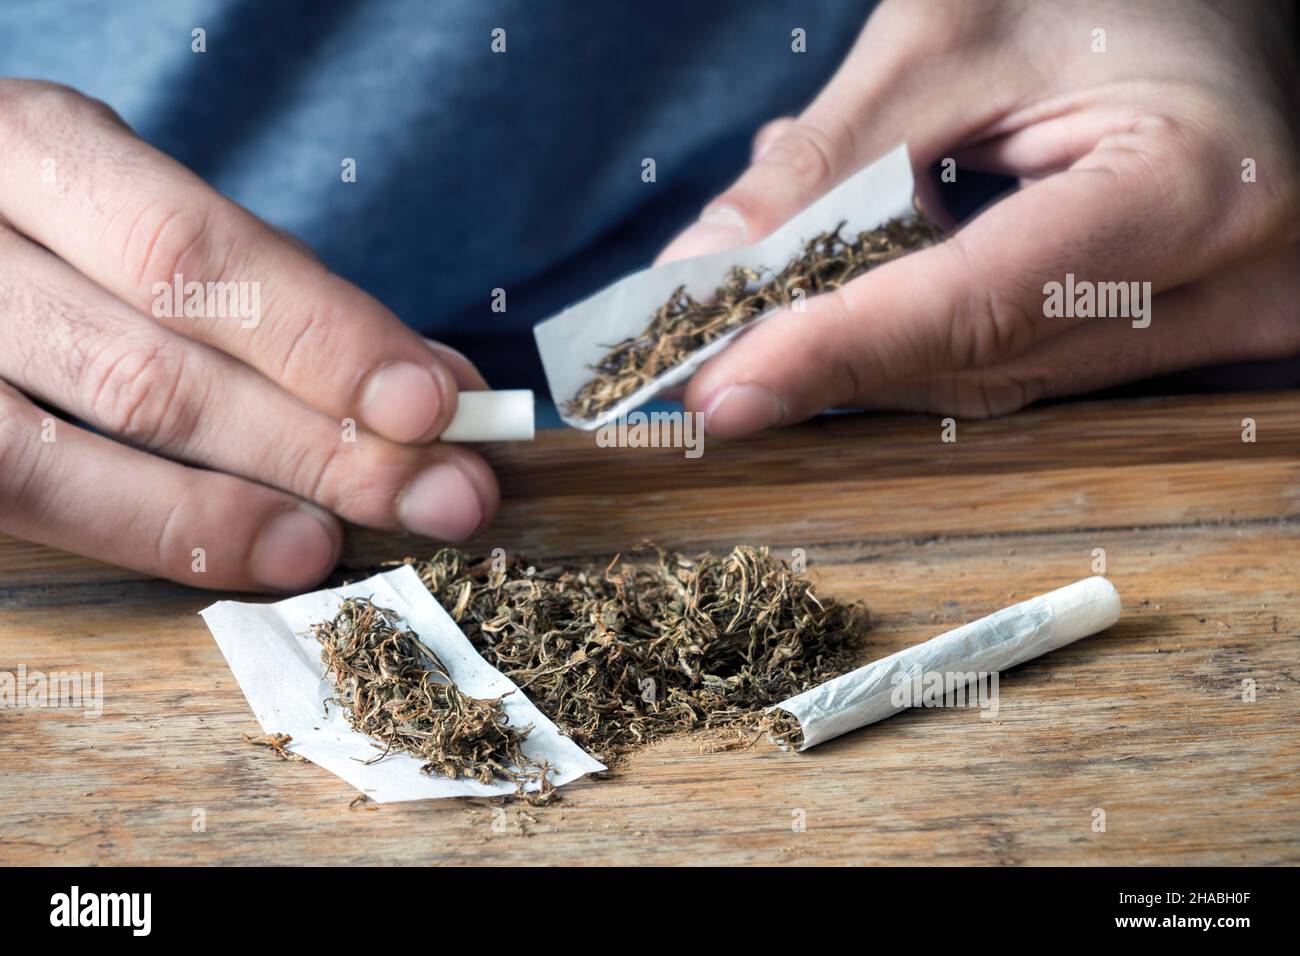 tabac à rouler SULLANA - Sullana Cigaretten